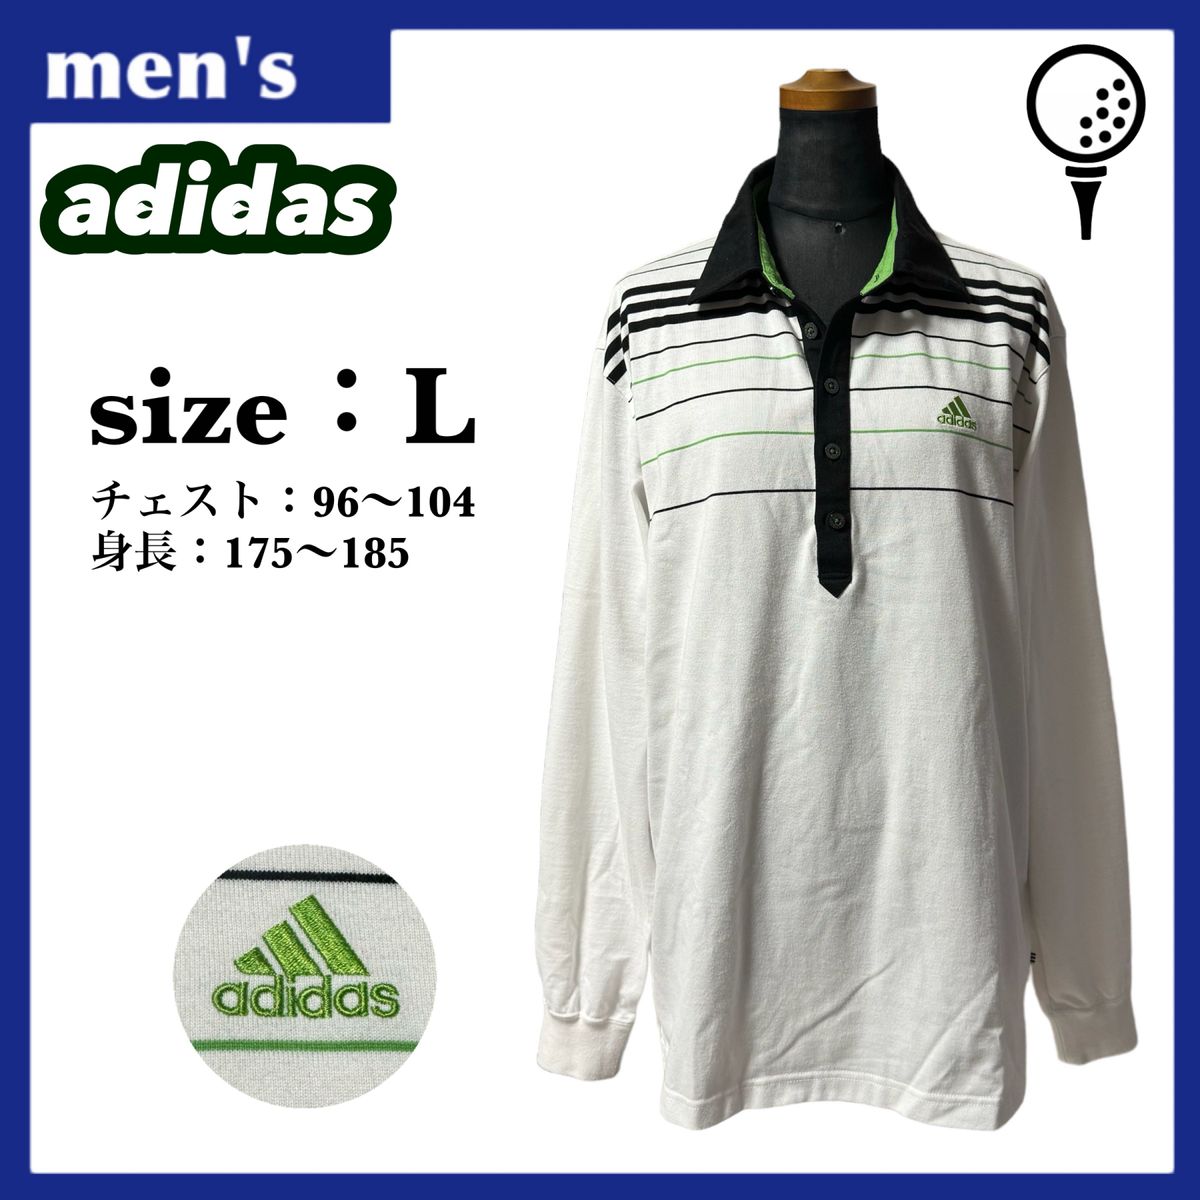 【春物】adidas アディダス ゴルフシャツ ポロシャツ メンズ サイズL ホワイト ボーダー柄 ワンポイントロゴ ゴルフウェア